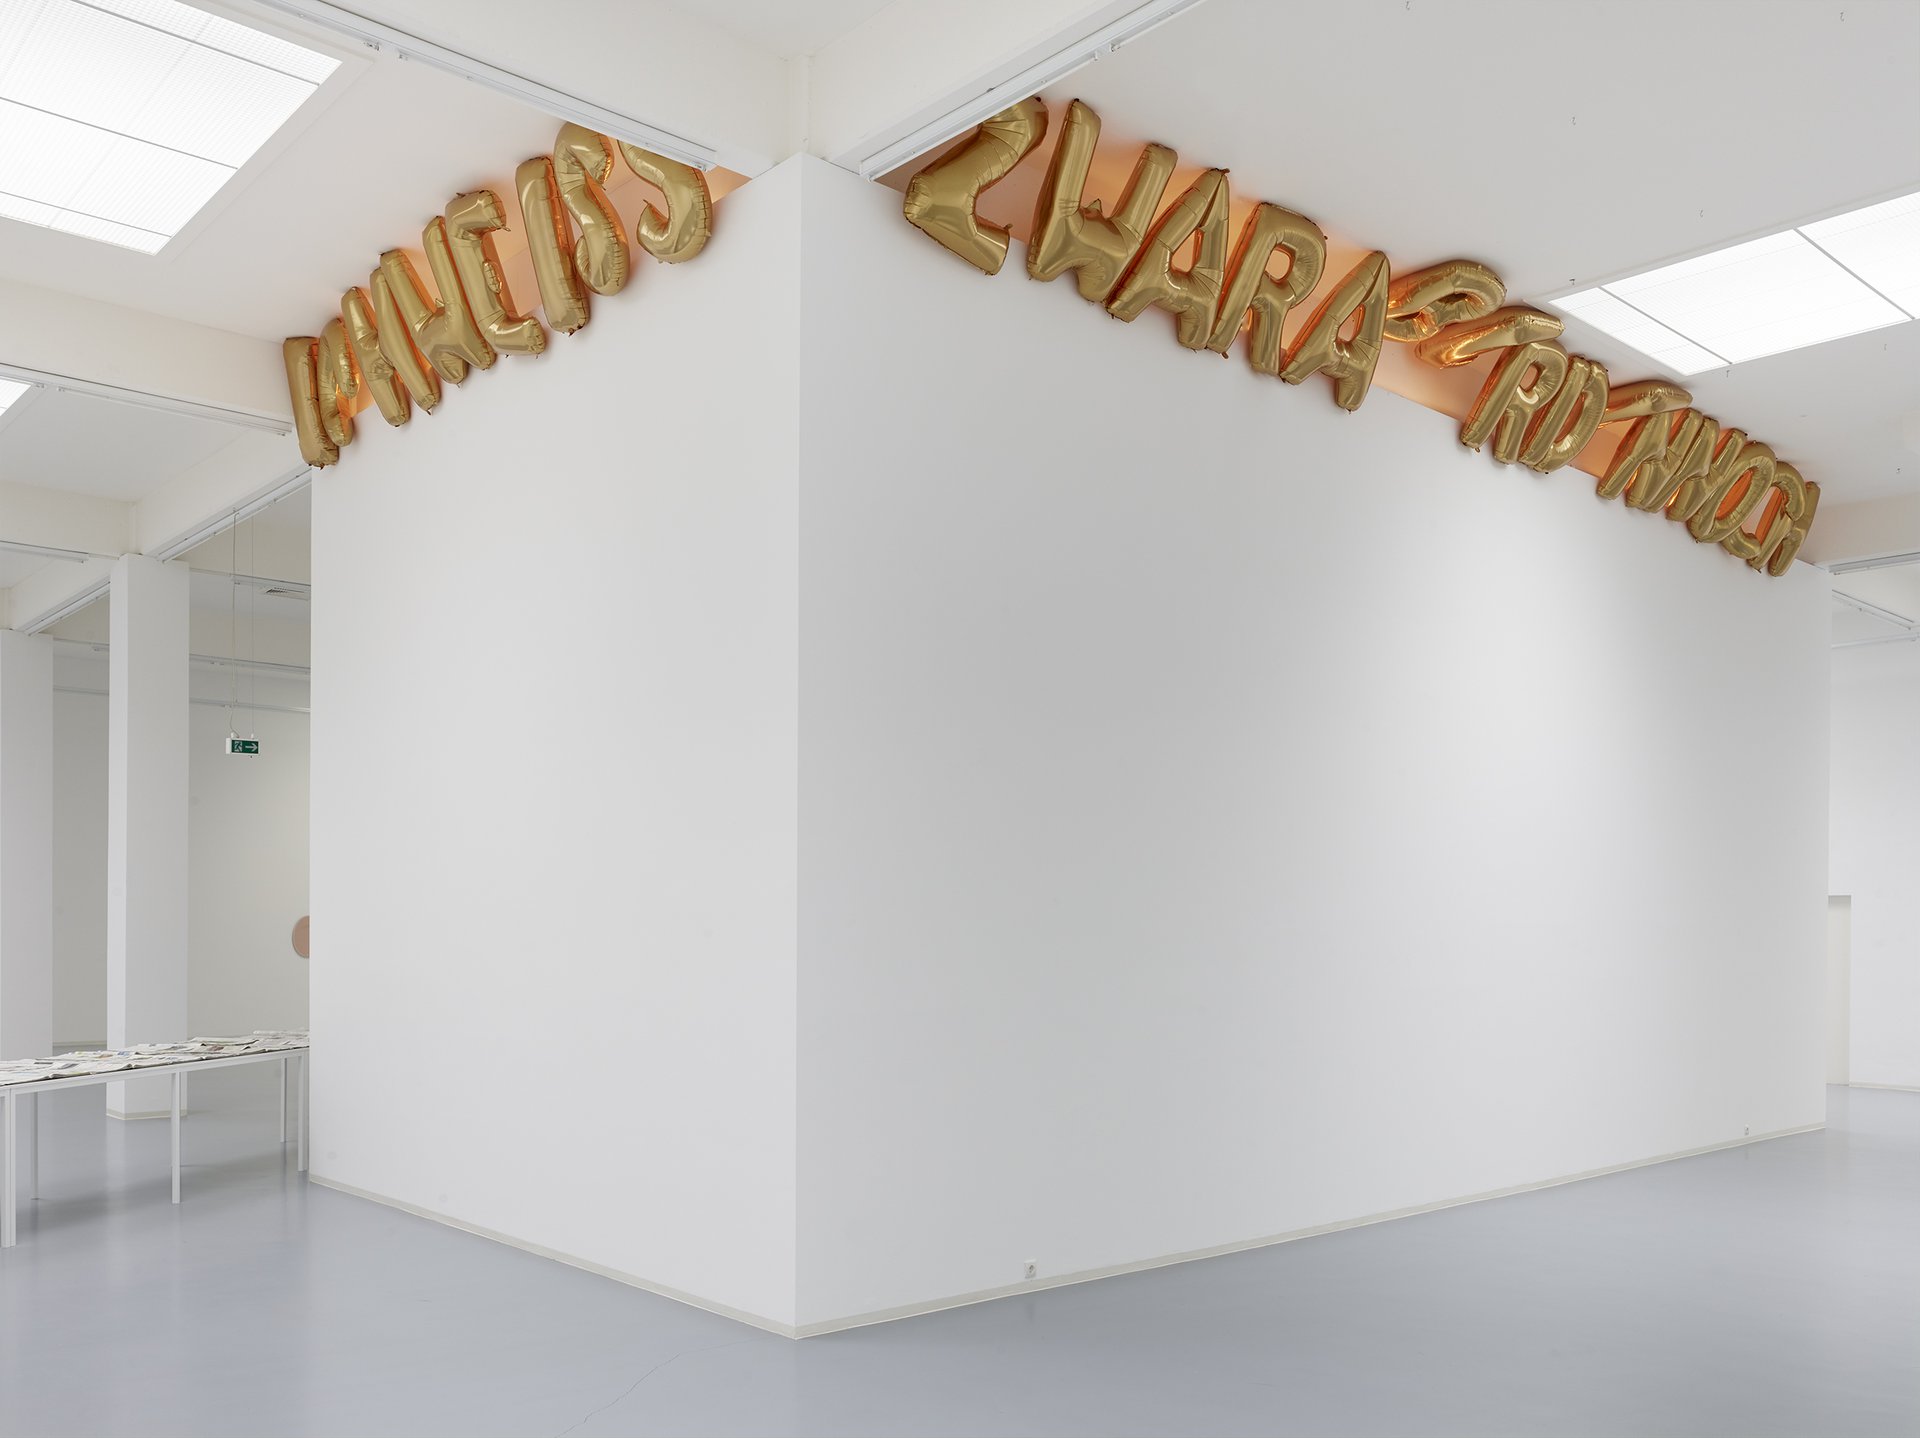 Banu Cennetoğlu, ICHWEISSZWARABERDENNOCH, Installationsansicht, 2015, Bonner Kunstverein, Courtesy die Künstlerin und Rodeo, London. Photo: Simon Vogel